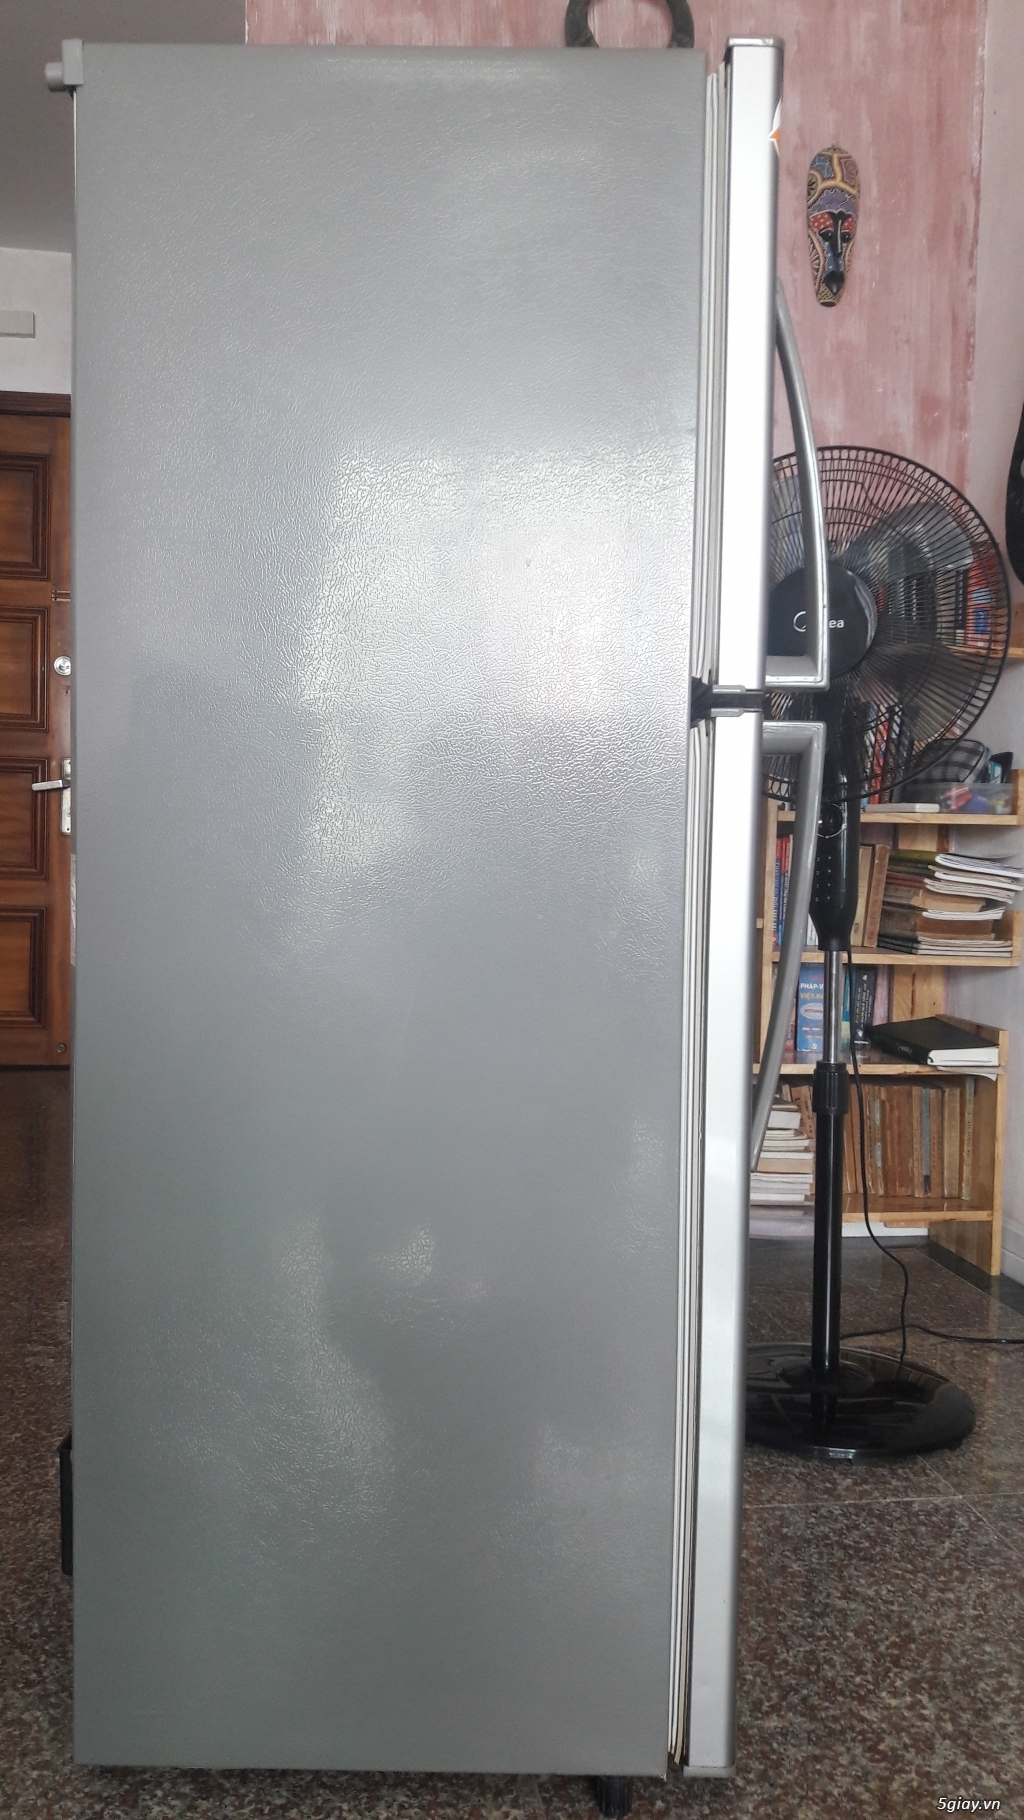 Tủ lạnh LG-185 lít- 2 cửa, 6 ngăn- còn mới 85% - 2